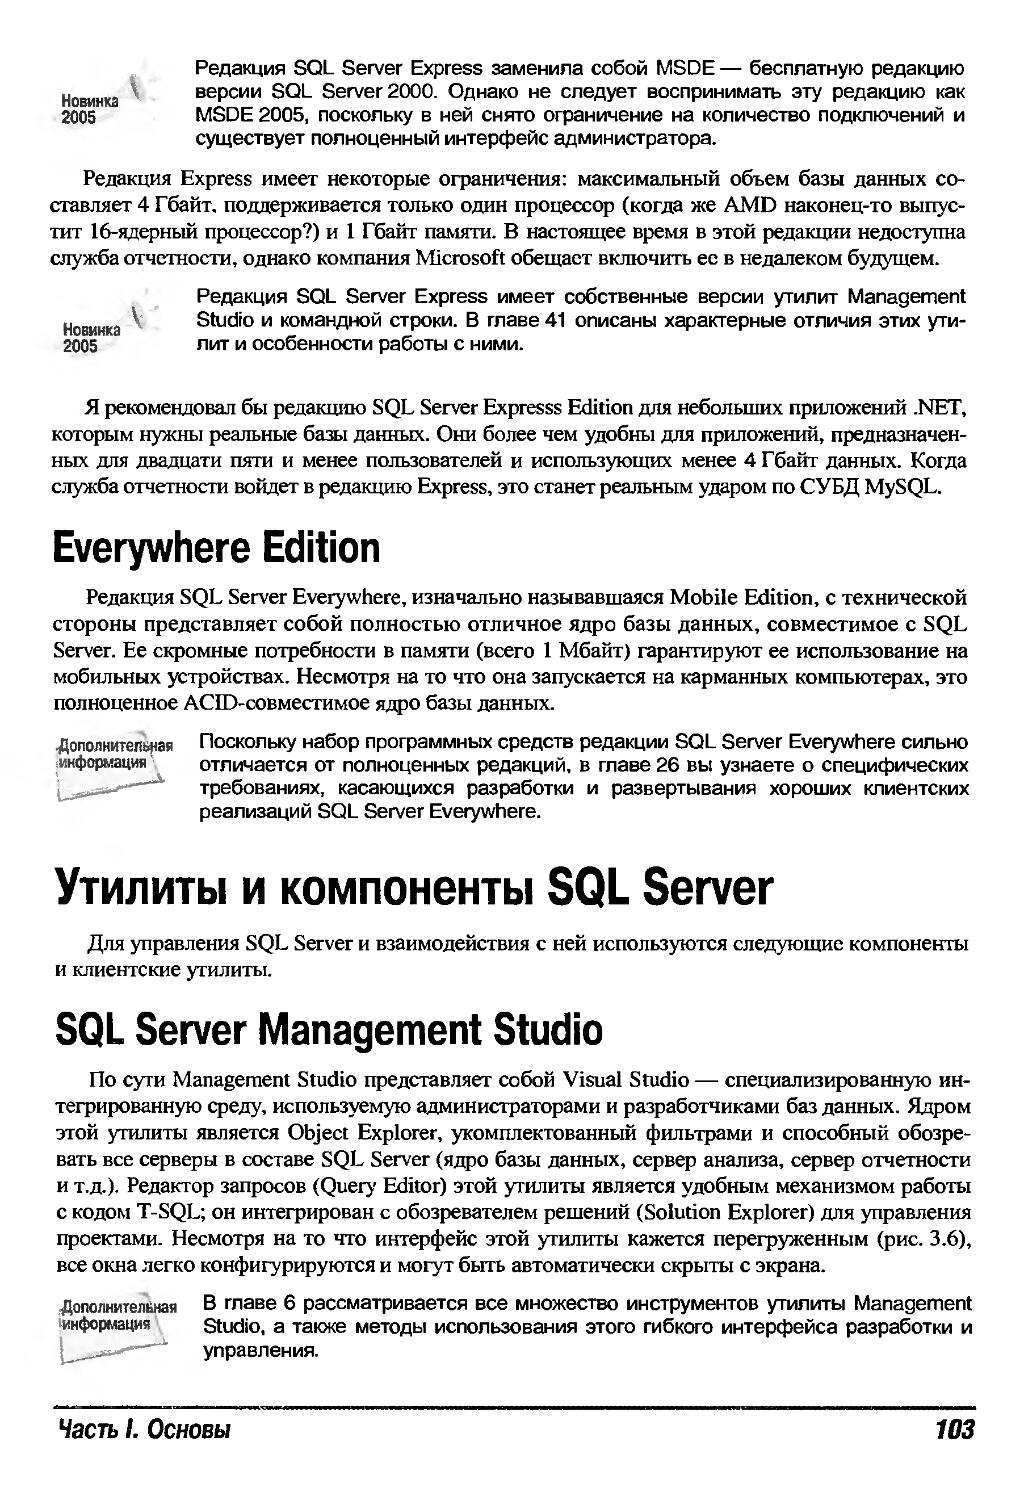 Утилиты и компоненты SQL Server